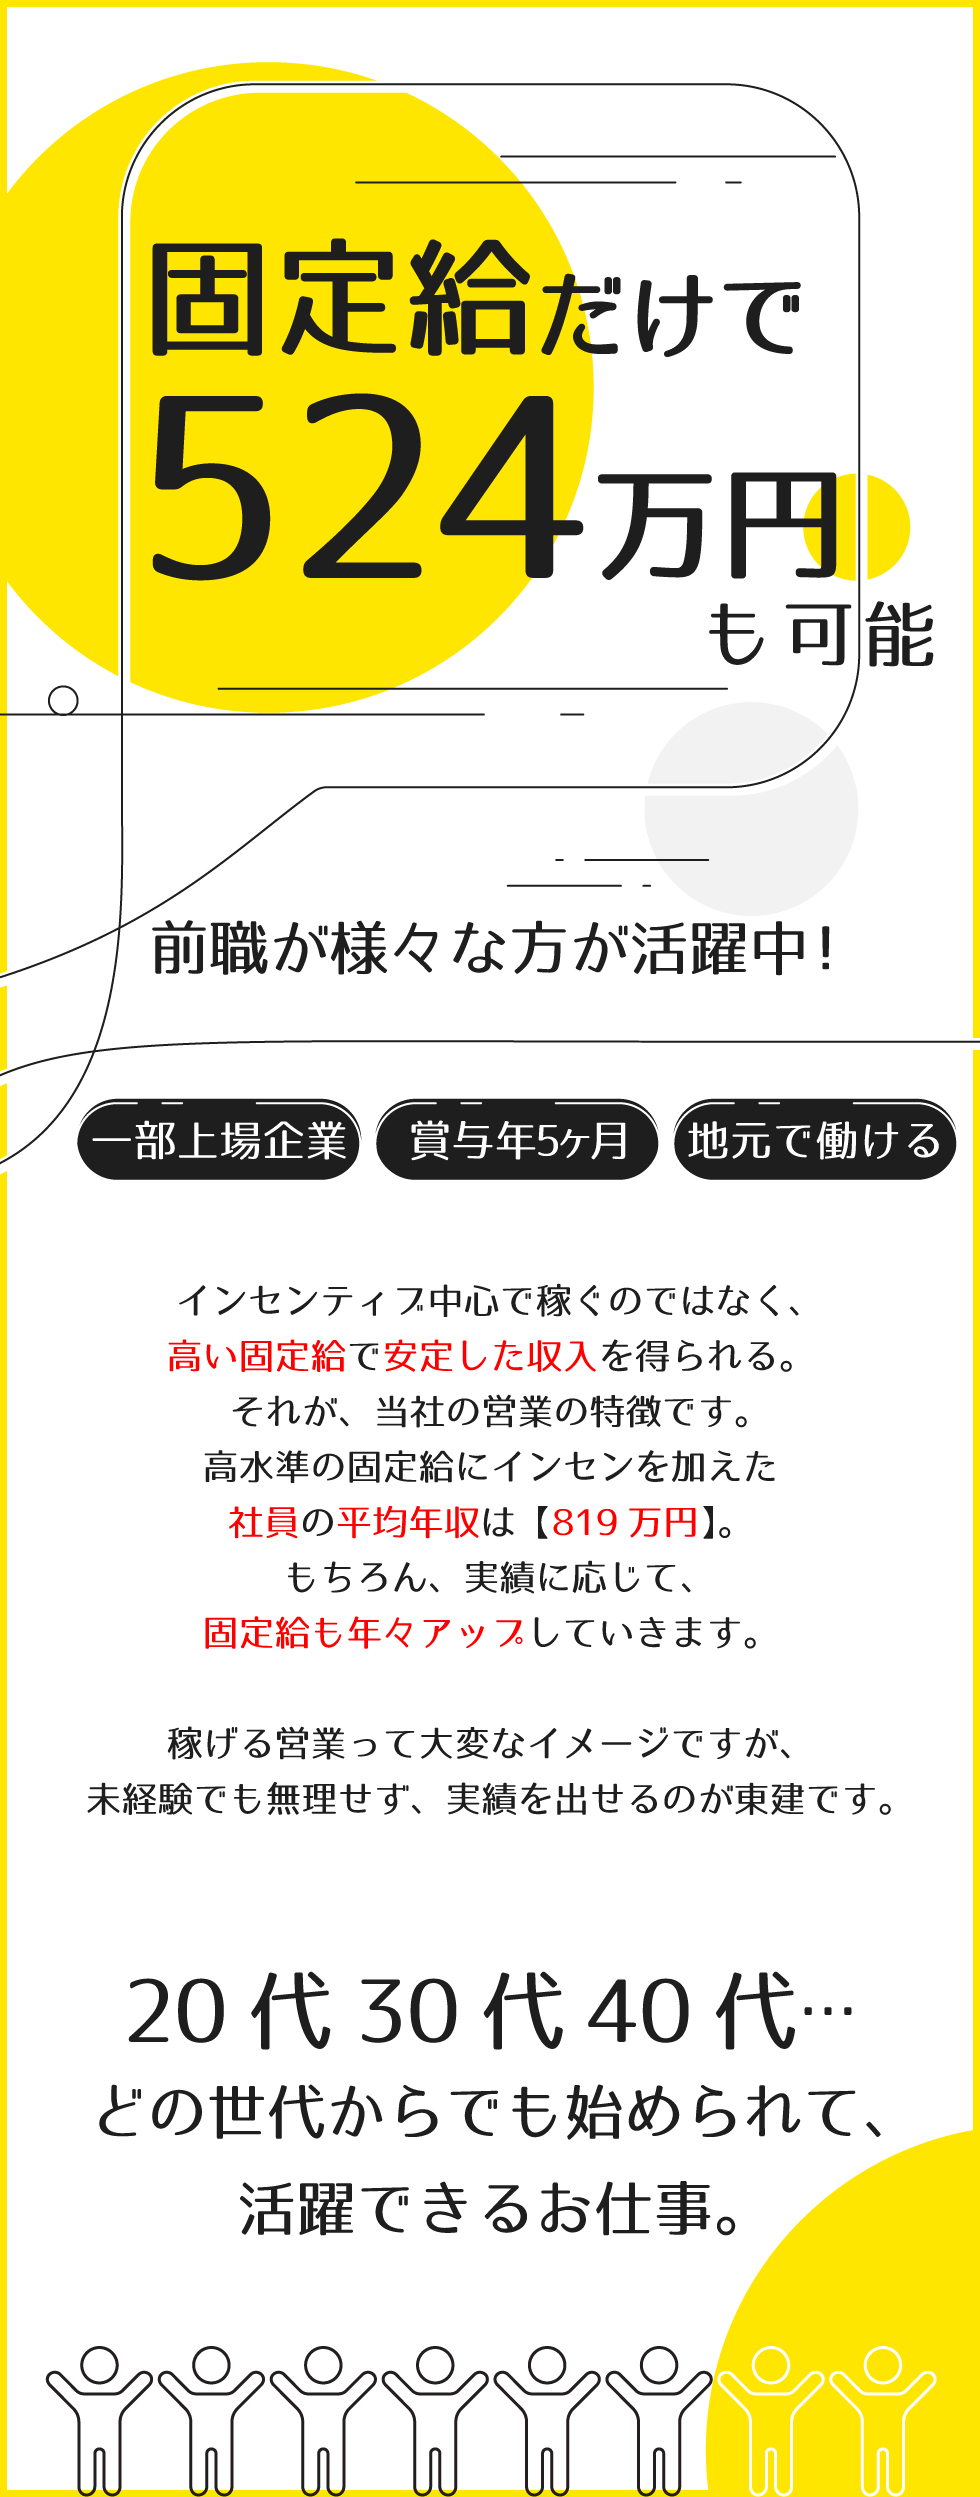 東建コーポレーション株式会社【東証プライム・名証プレミア上場】